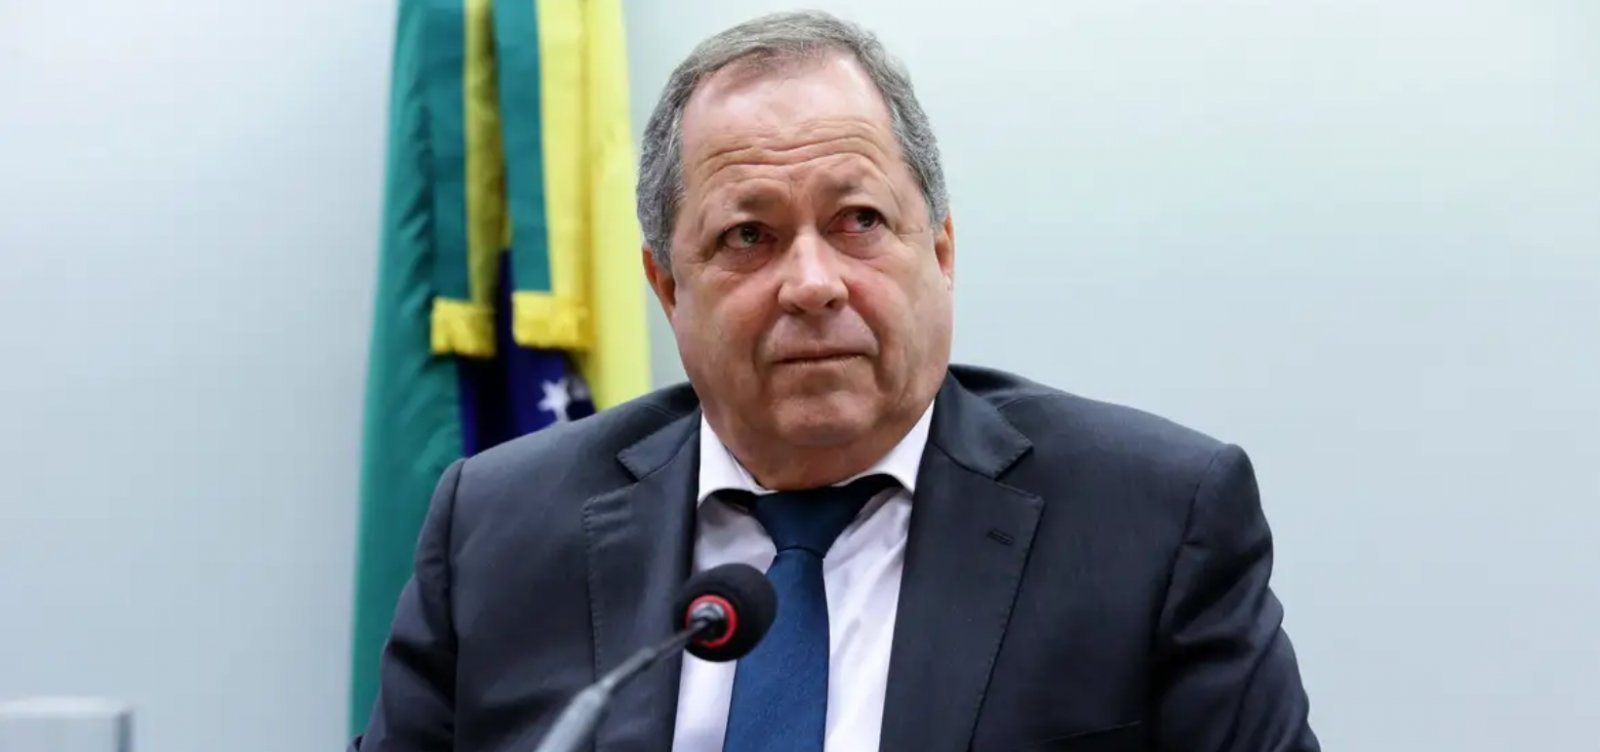 Brazão pede à Câmara saída de relatora em processo de cassação alegando "imparcialidade"